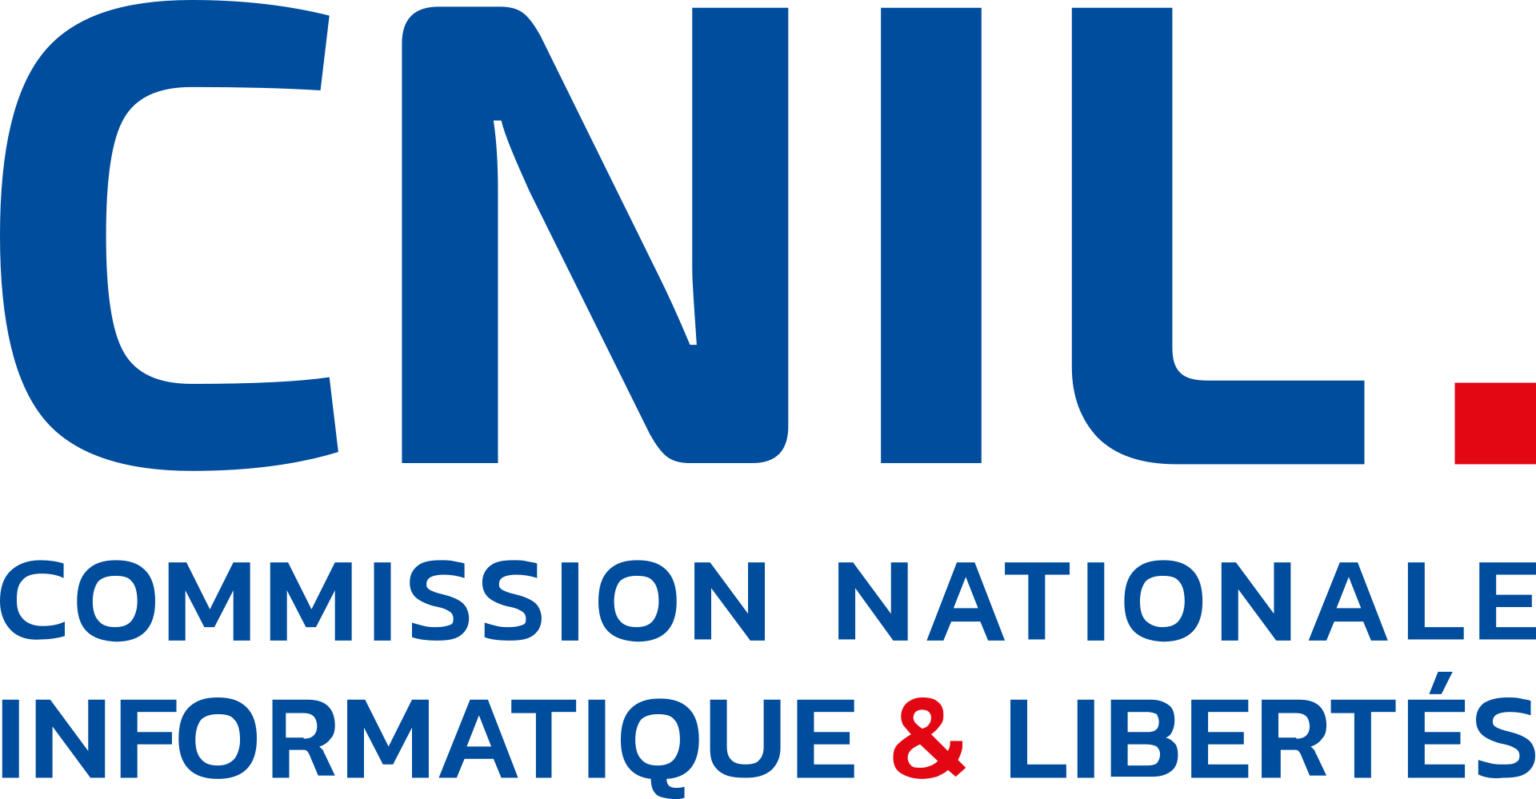 CNIL logo_Infos News registre de traitement rgpd données personnelles cnil